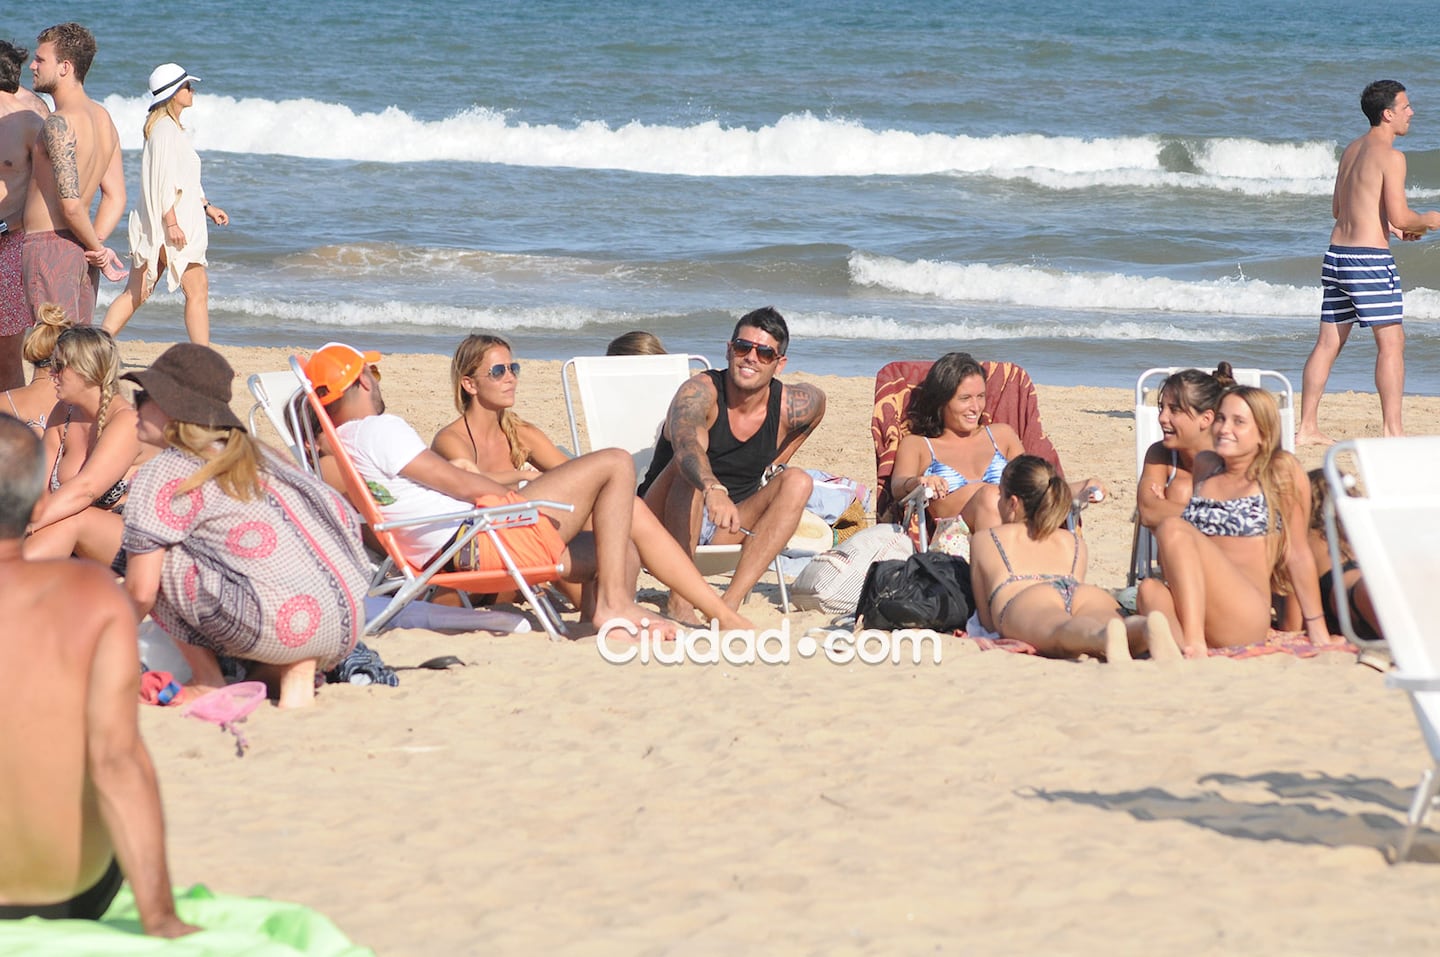 Cristian U. disfrutó de su semana de vacaciones con amigas en Punta del Este. (Foto: GM Press - Ciudad.com)